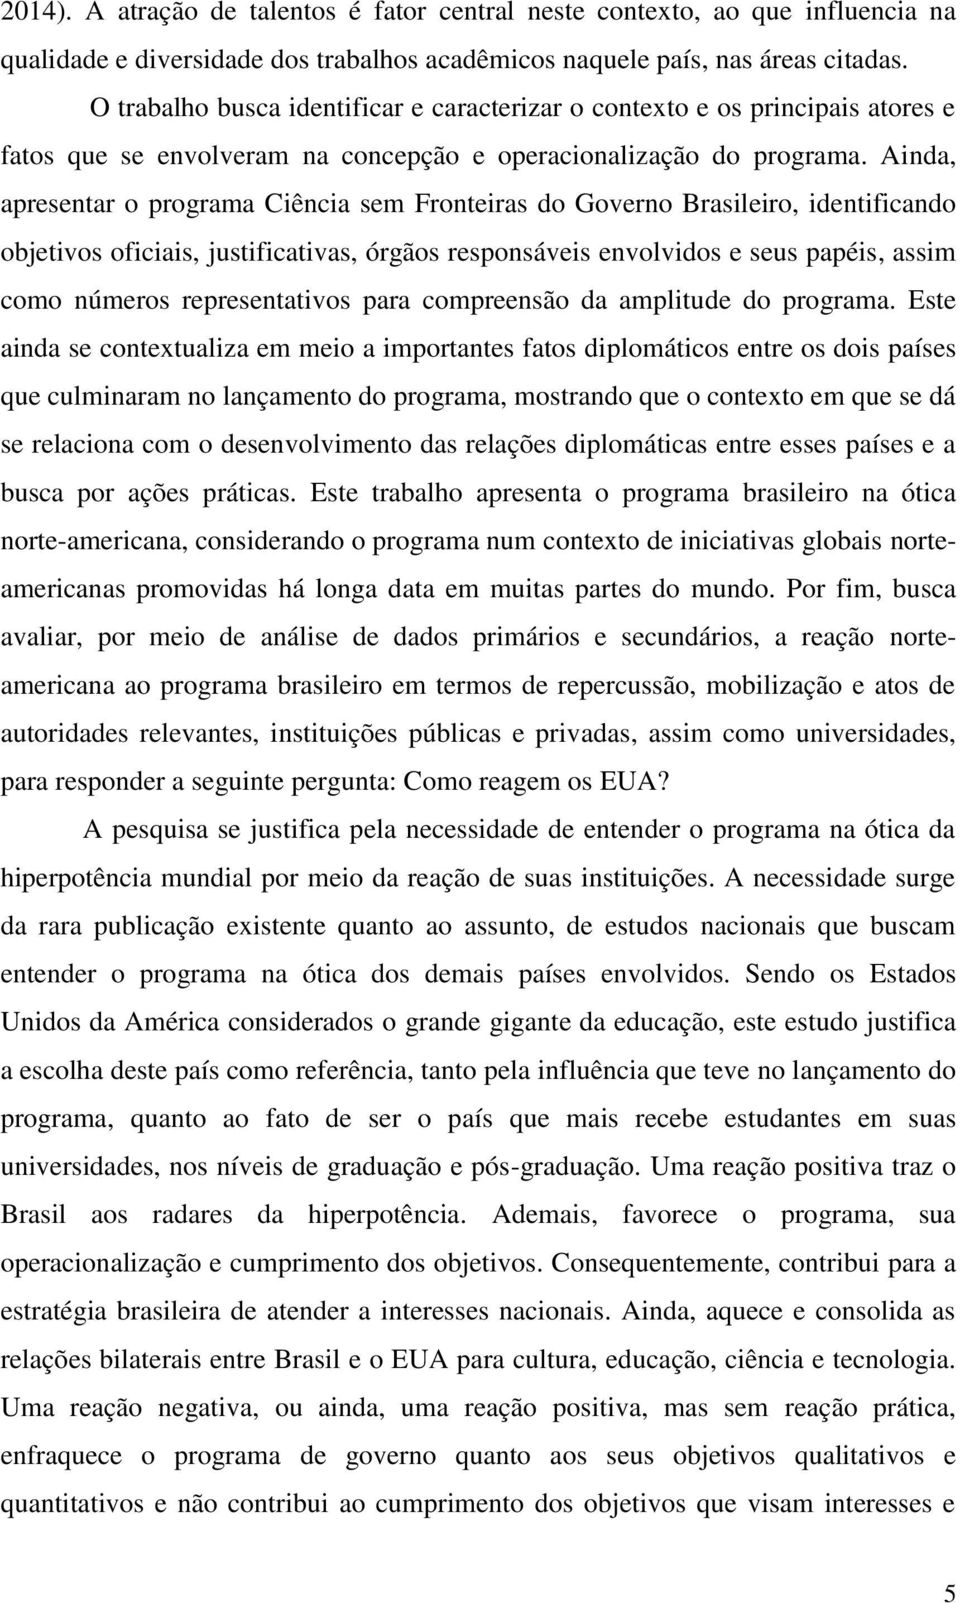 Ainda, apresentar o programa Ciência sem Fronteiras do Governo Brasileiro, identificando objetivos oficiais, justificativas, órgãos responsáveis envolvidos e seus papéis, assim como números